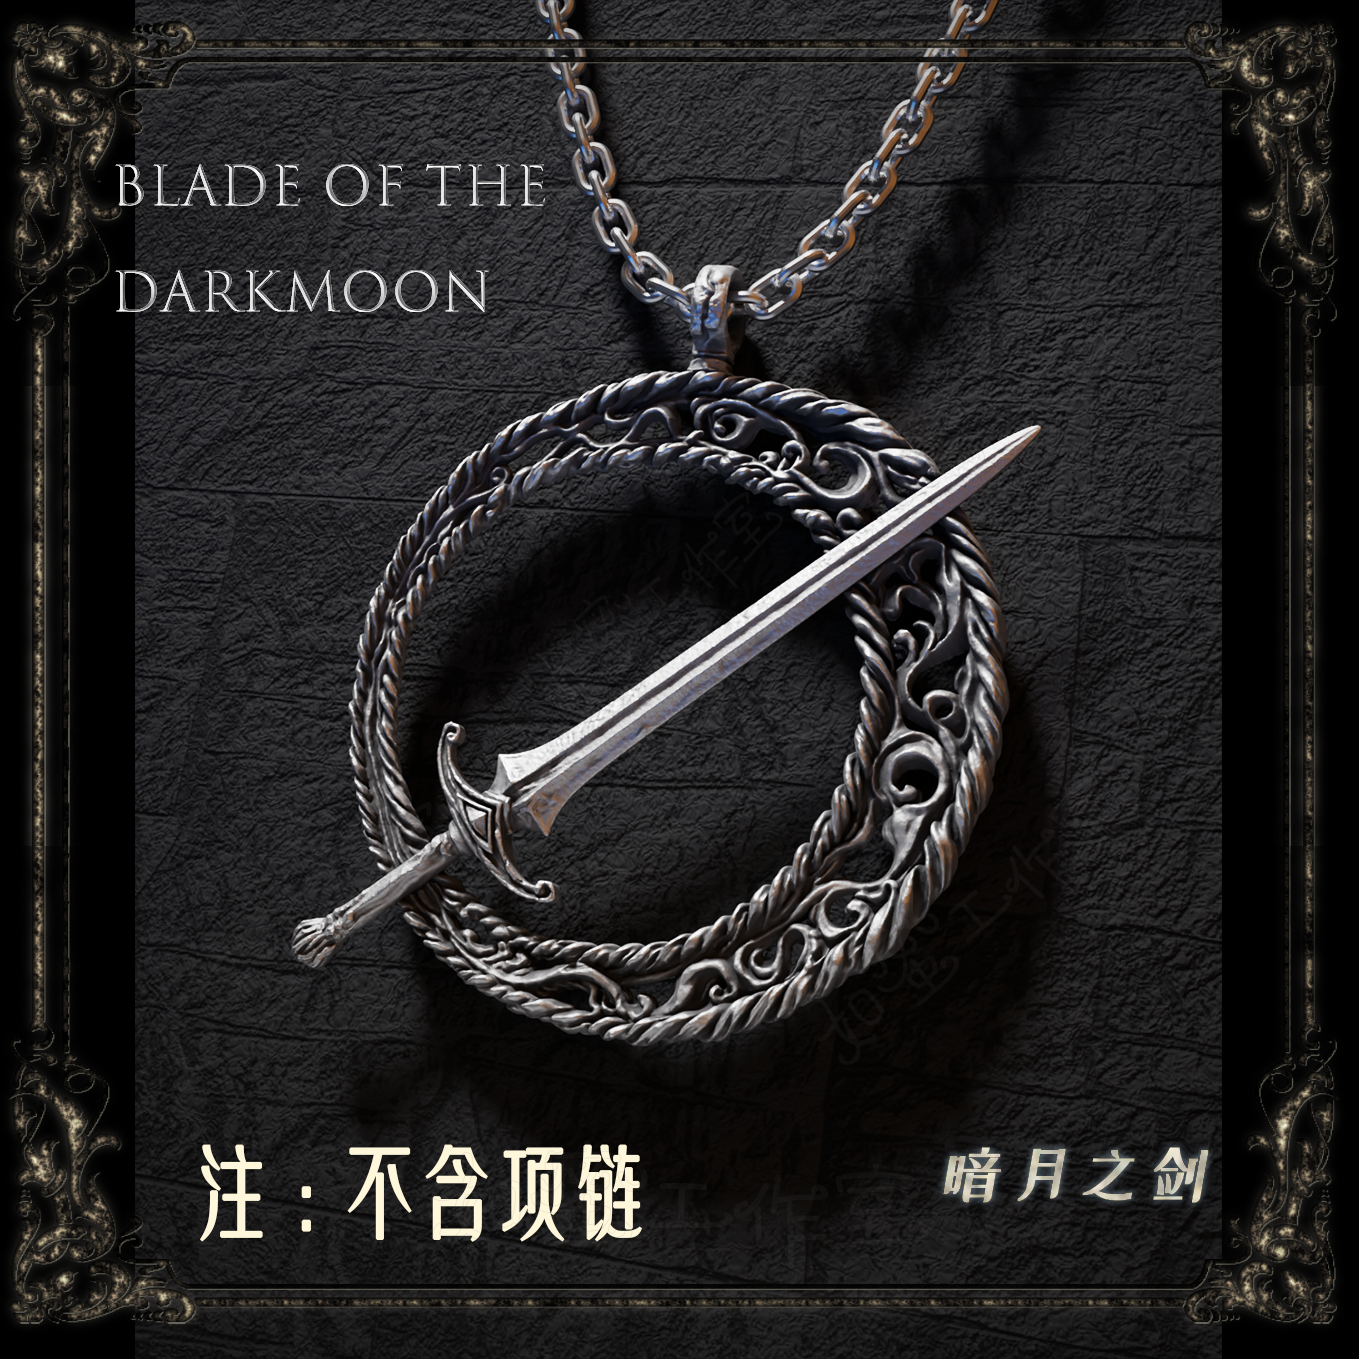 黑暗之魂3老头环魂系列游戏周边暗月之剑金属银项链吊坠可佩戴